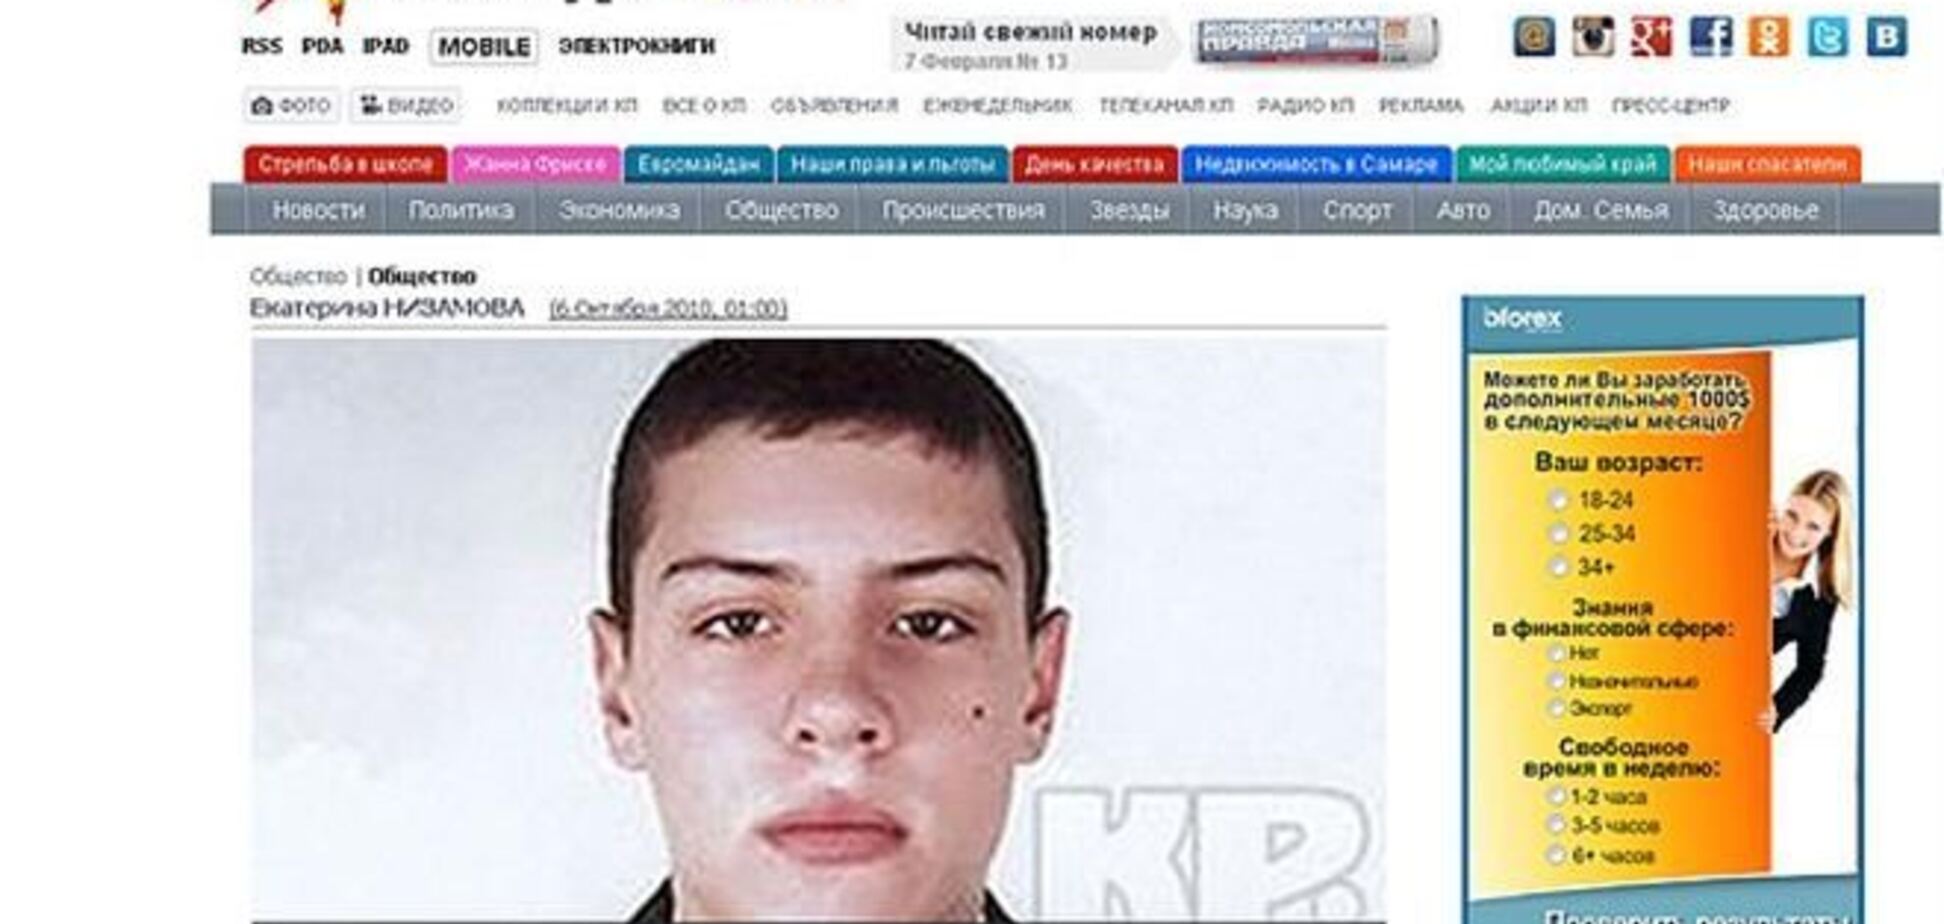 ЗМІ: 'активіст' Правого сектора і підозрюваний у вбивстві росіянин - одна особа